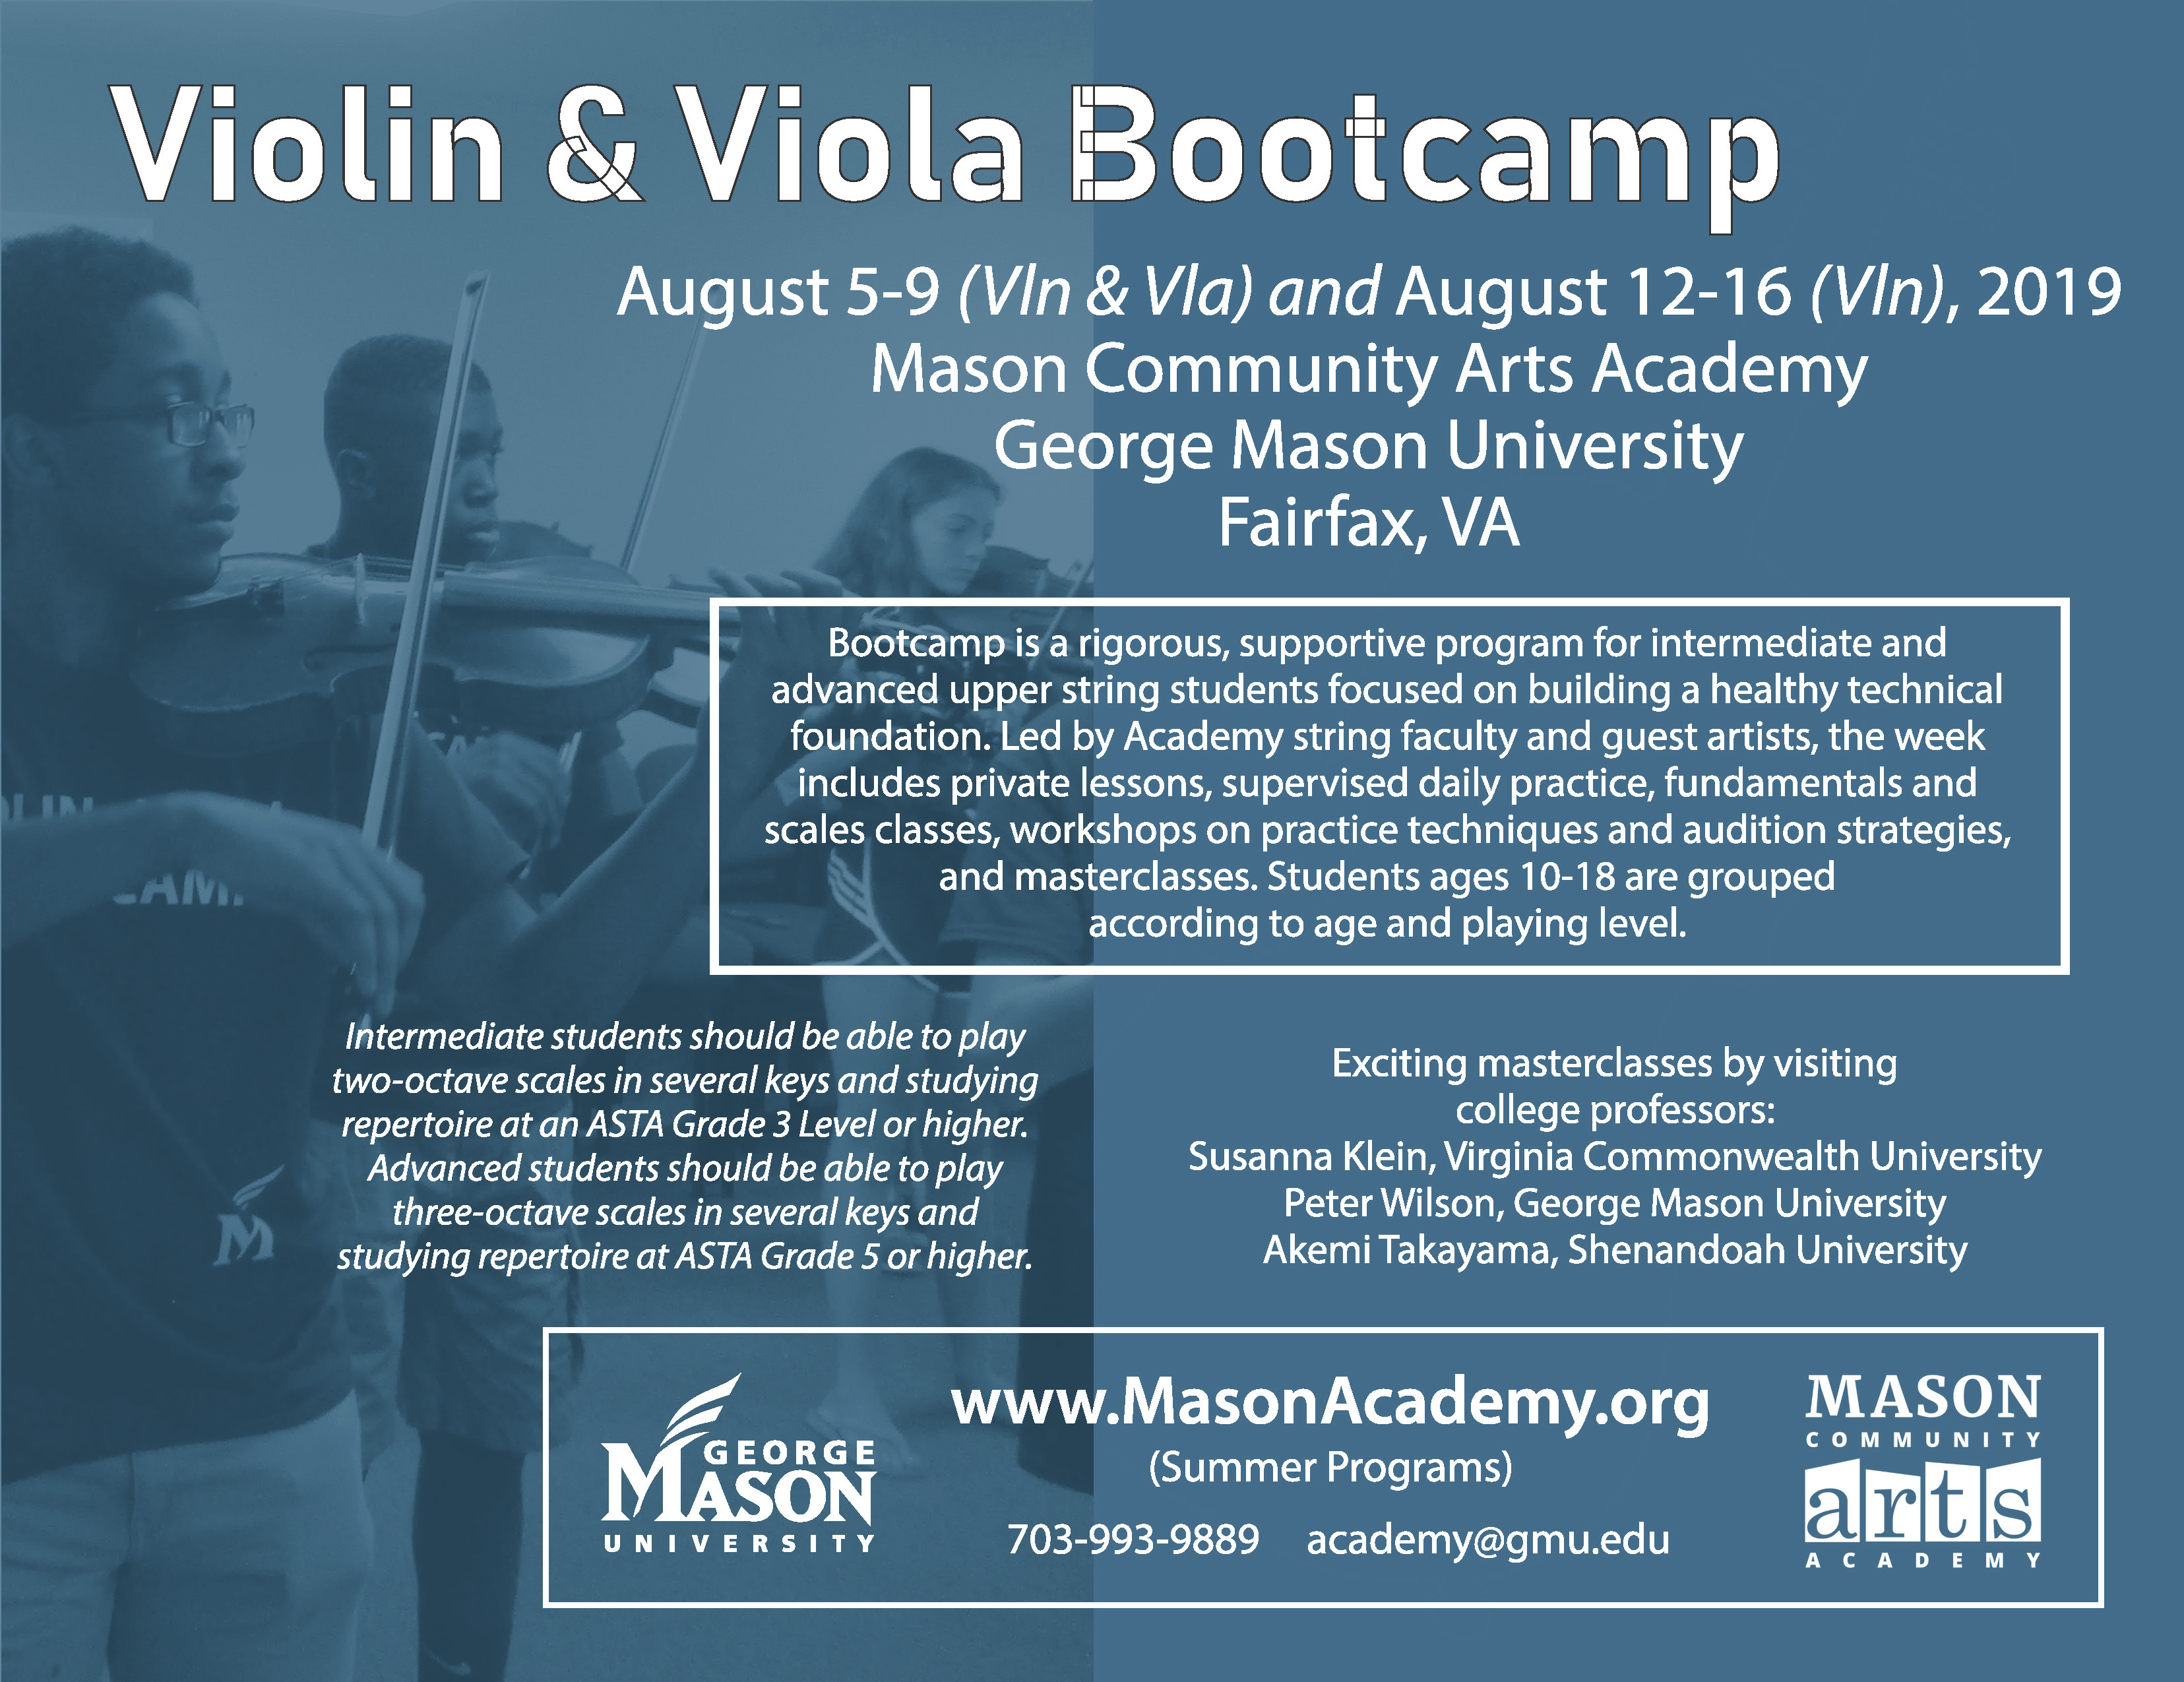 Violin Bootcamp 2019 Flier